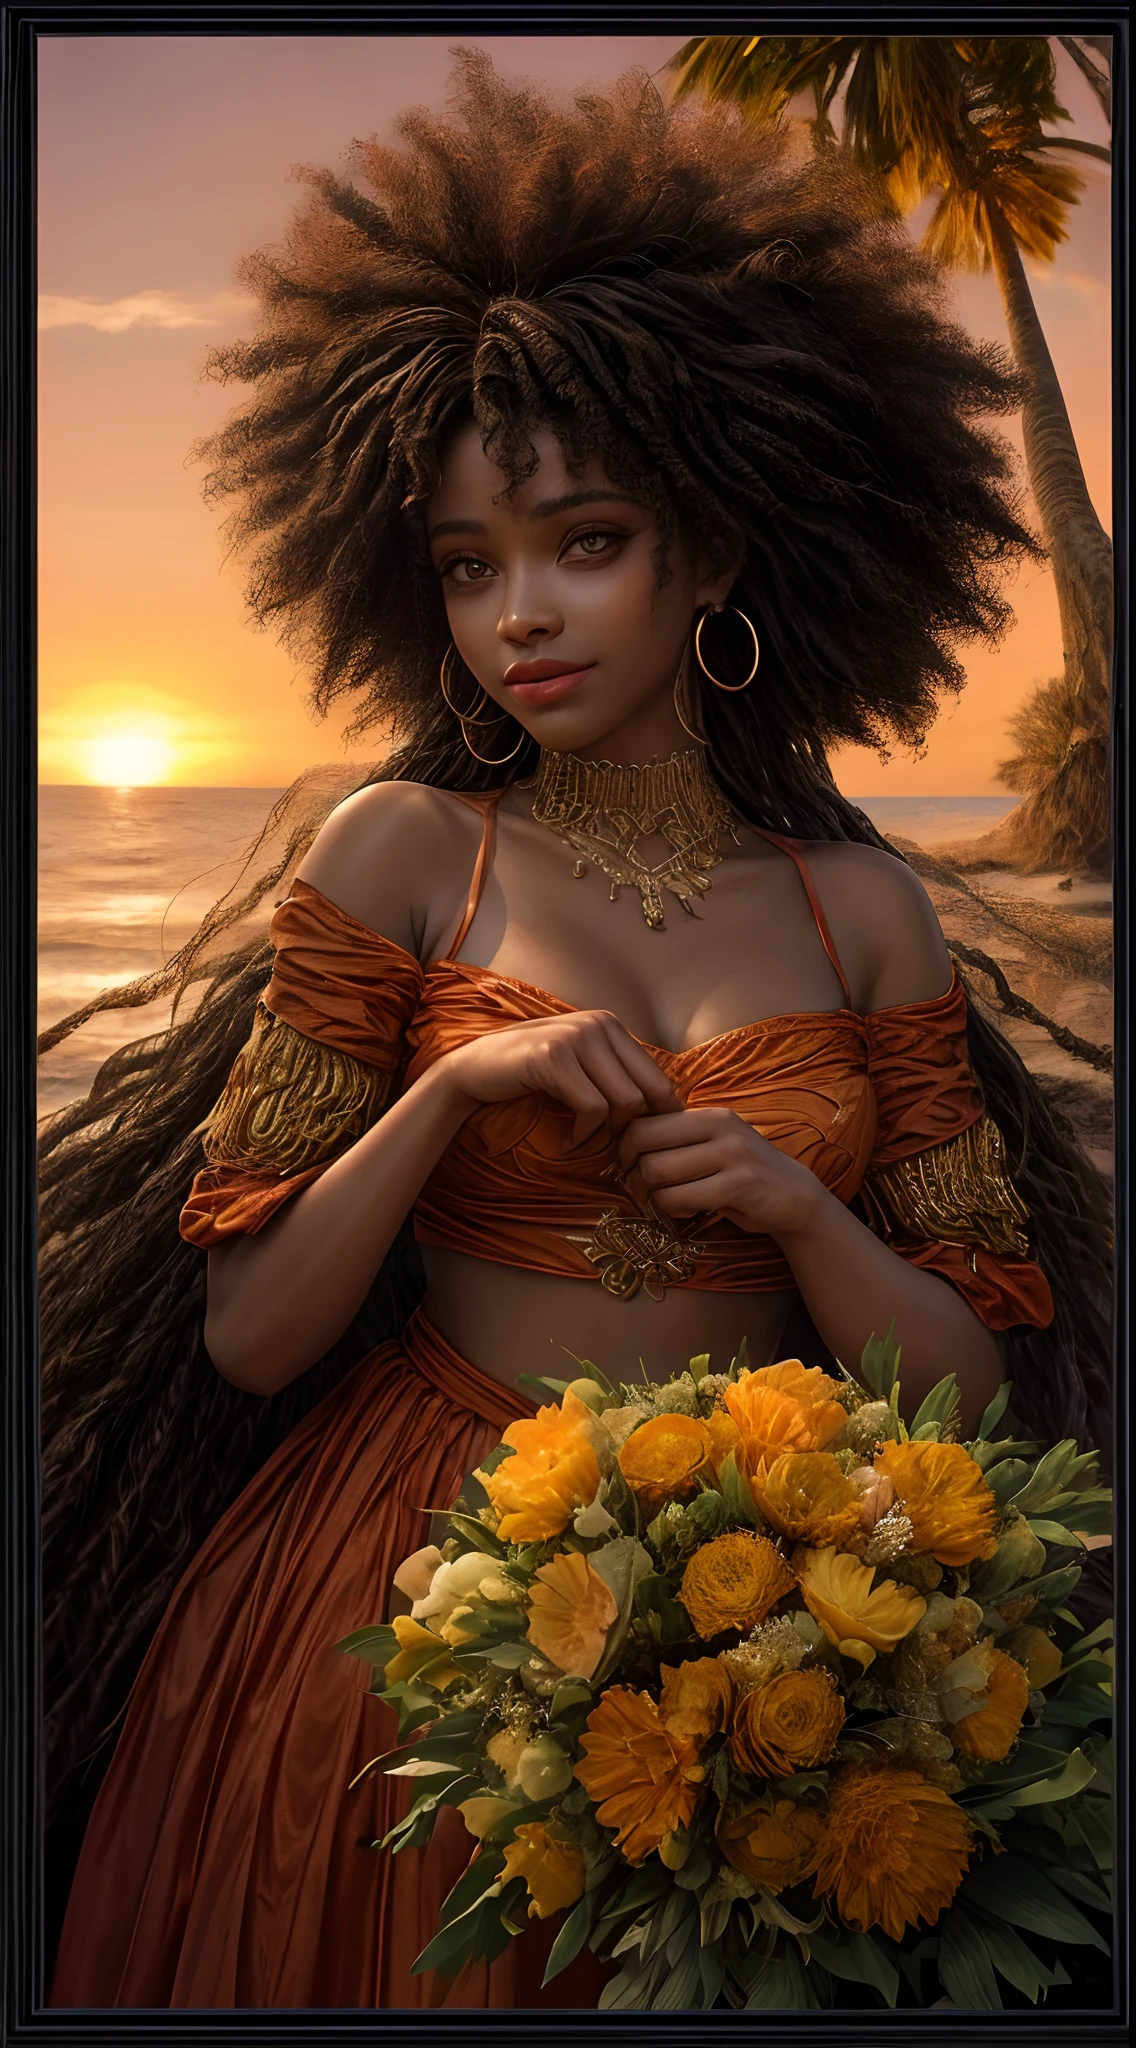 Eine Nahaufnahme des Gesichts einer afroamerikanischen Frau, in warme Orangetöne getaucht, wie vom sanften Schein eines Sonnenuntergangs beleuchtet, Deine Augen strahlen vor Freude und Zufriedenheit, umrahmt von wallenden Haarsträhnen, Fotografie, Fotografiert mit einem 35-mm-Objektiv